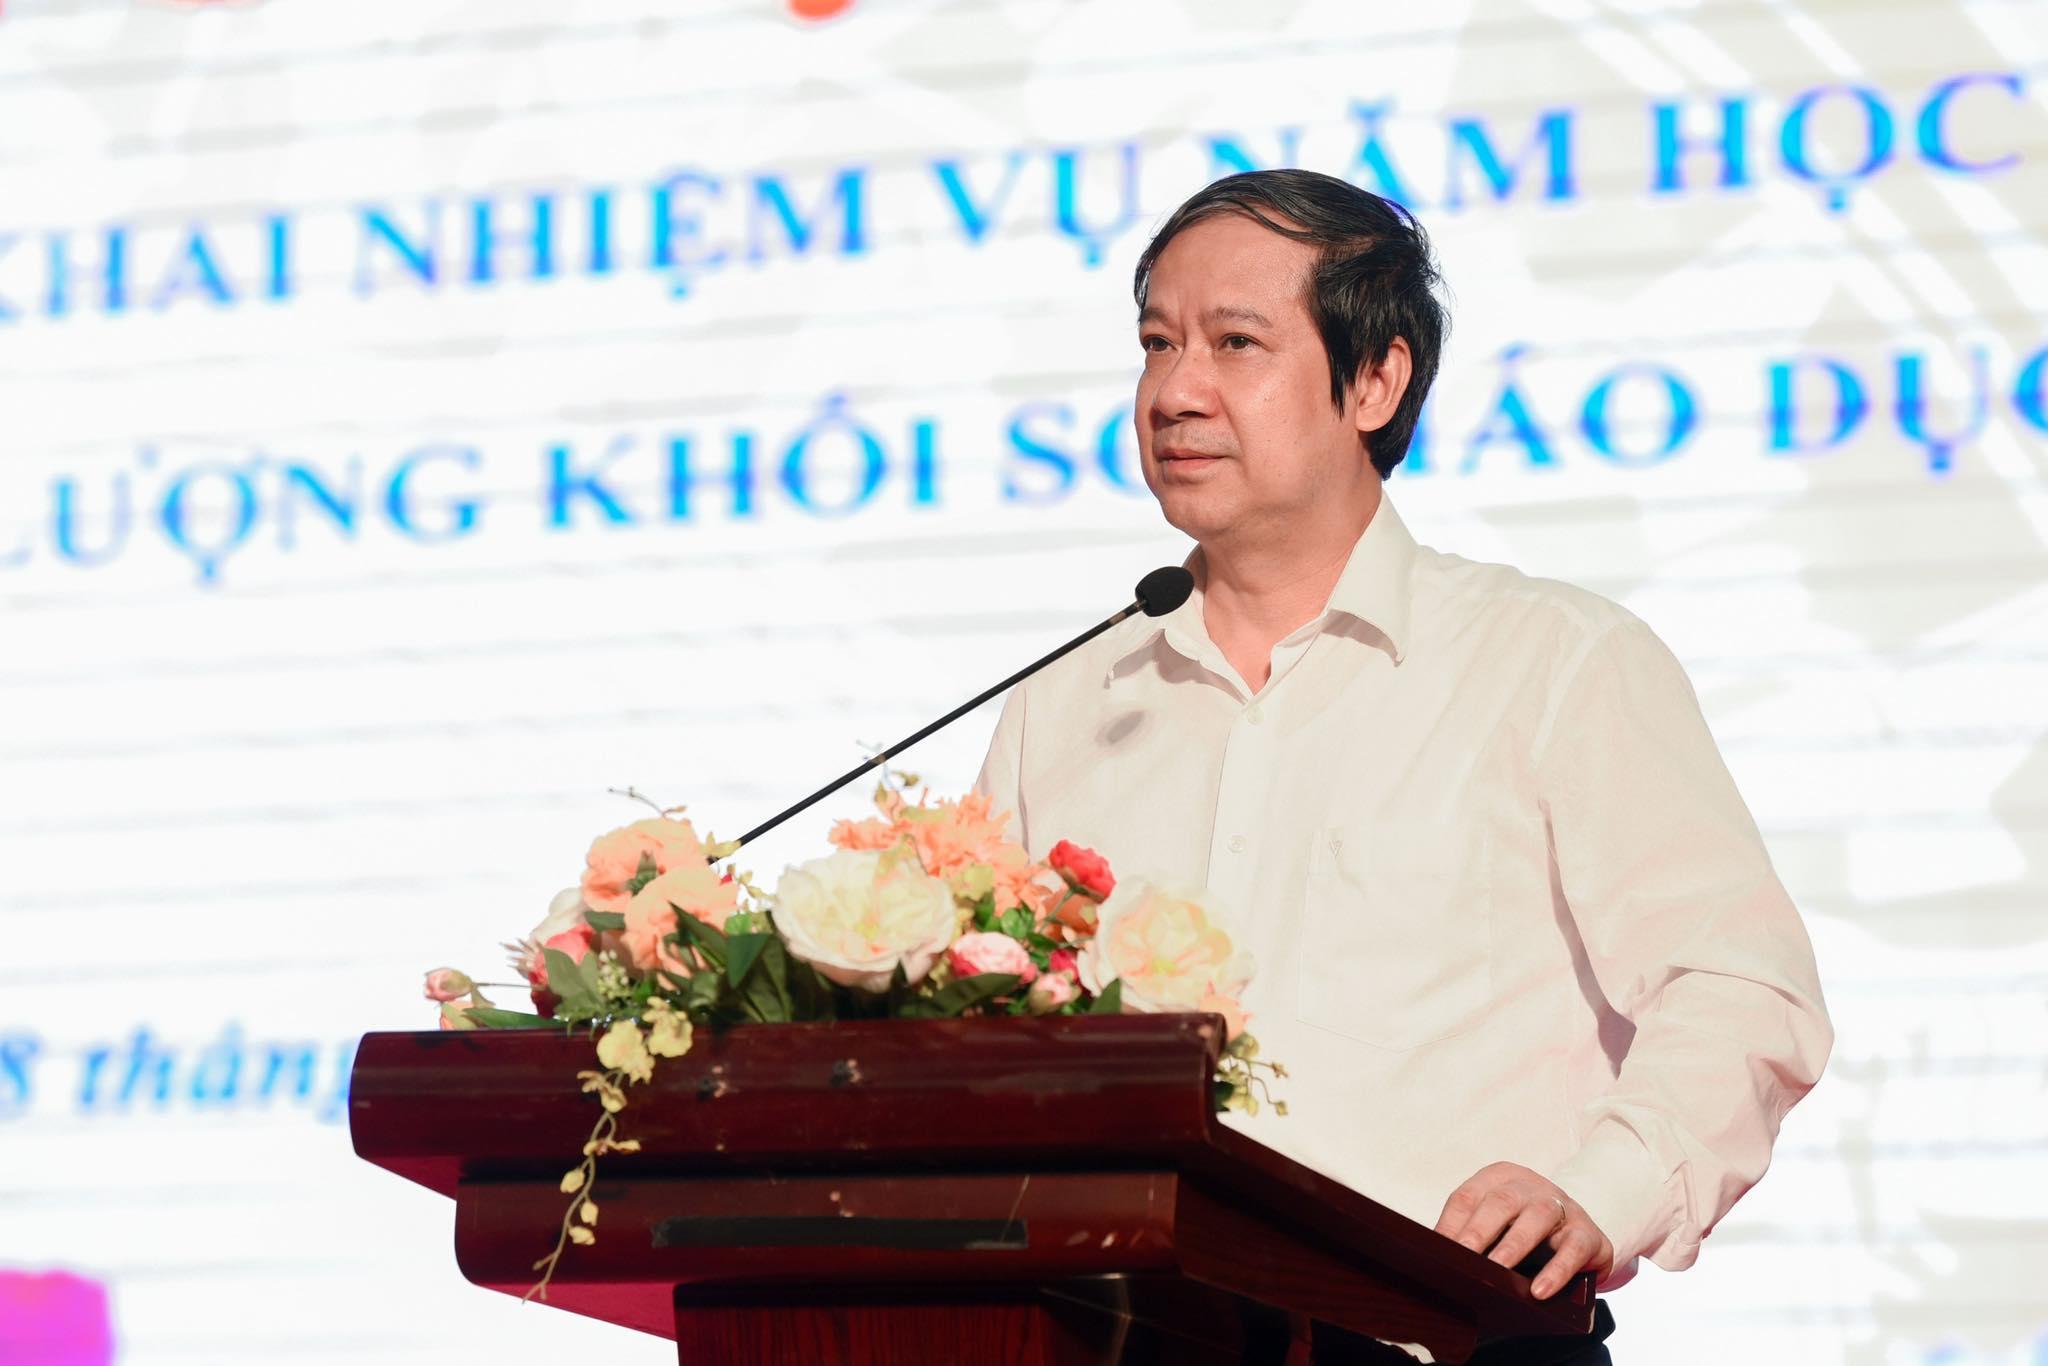 Bộ trưởng Bộ GD&ĐT Nguyễn Kim Sơn phát biểu khai mạc Hội nghị